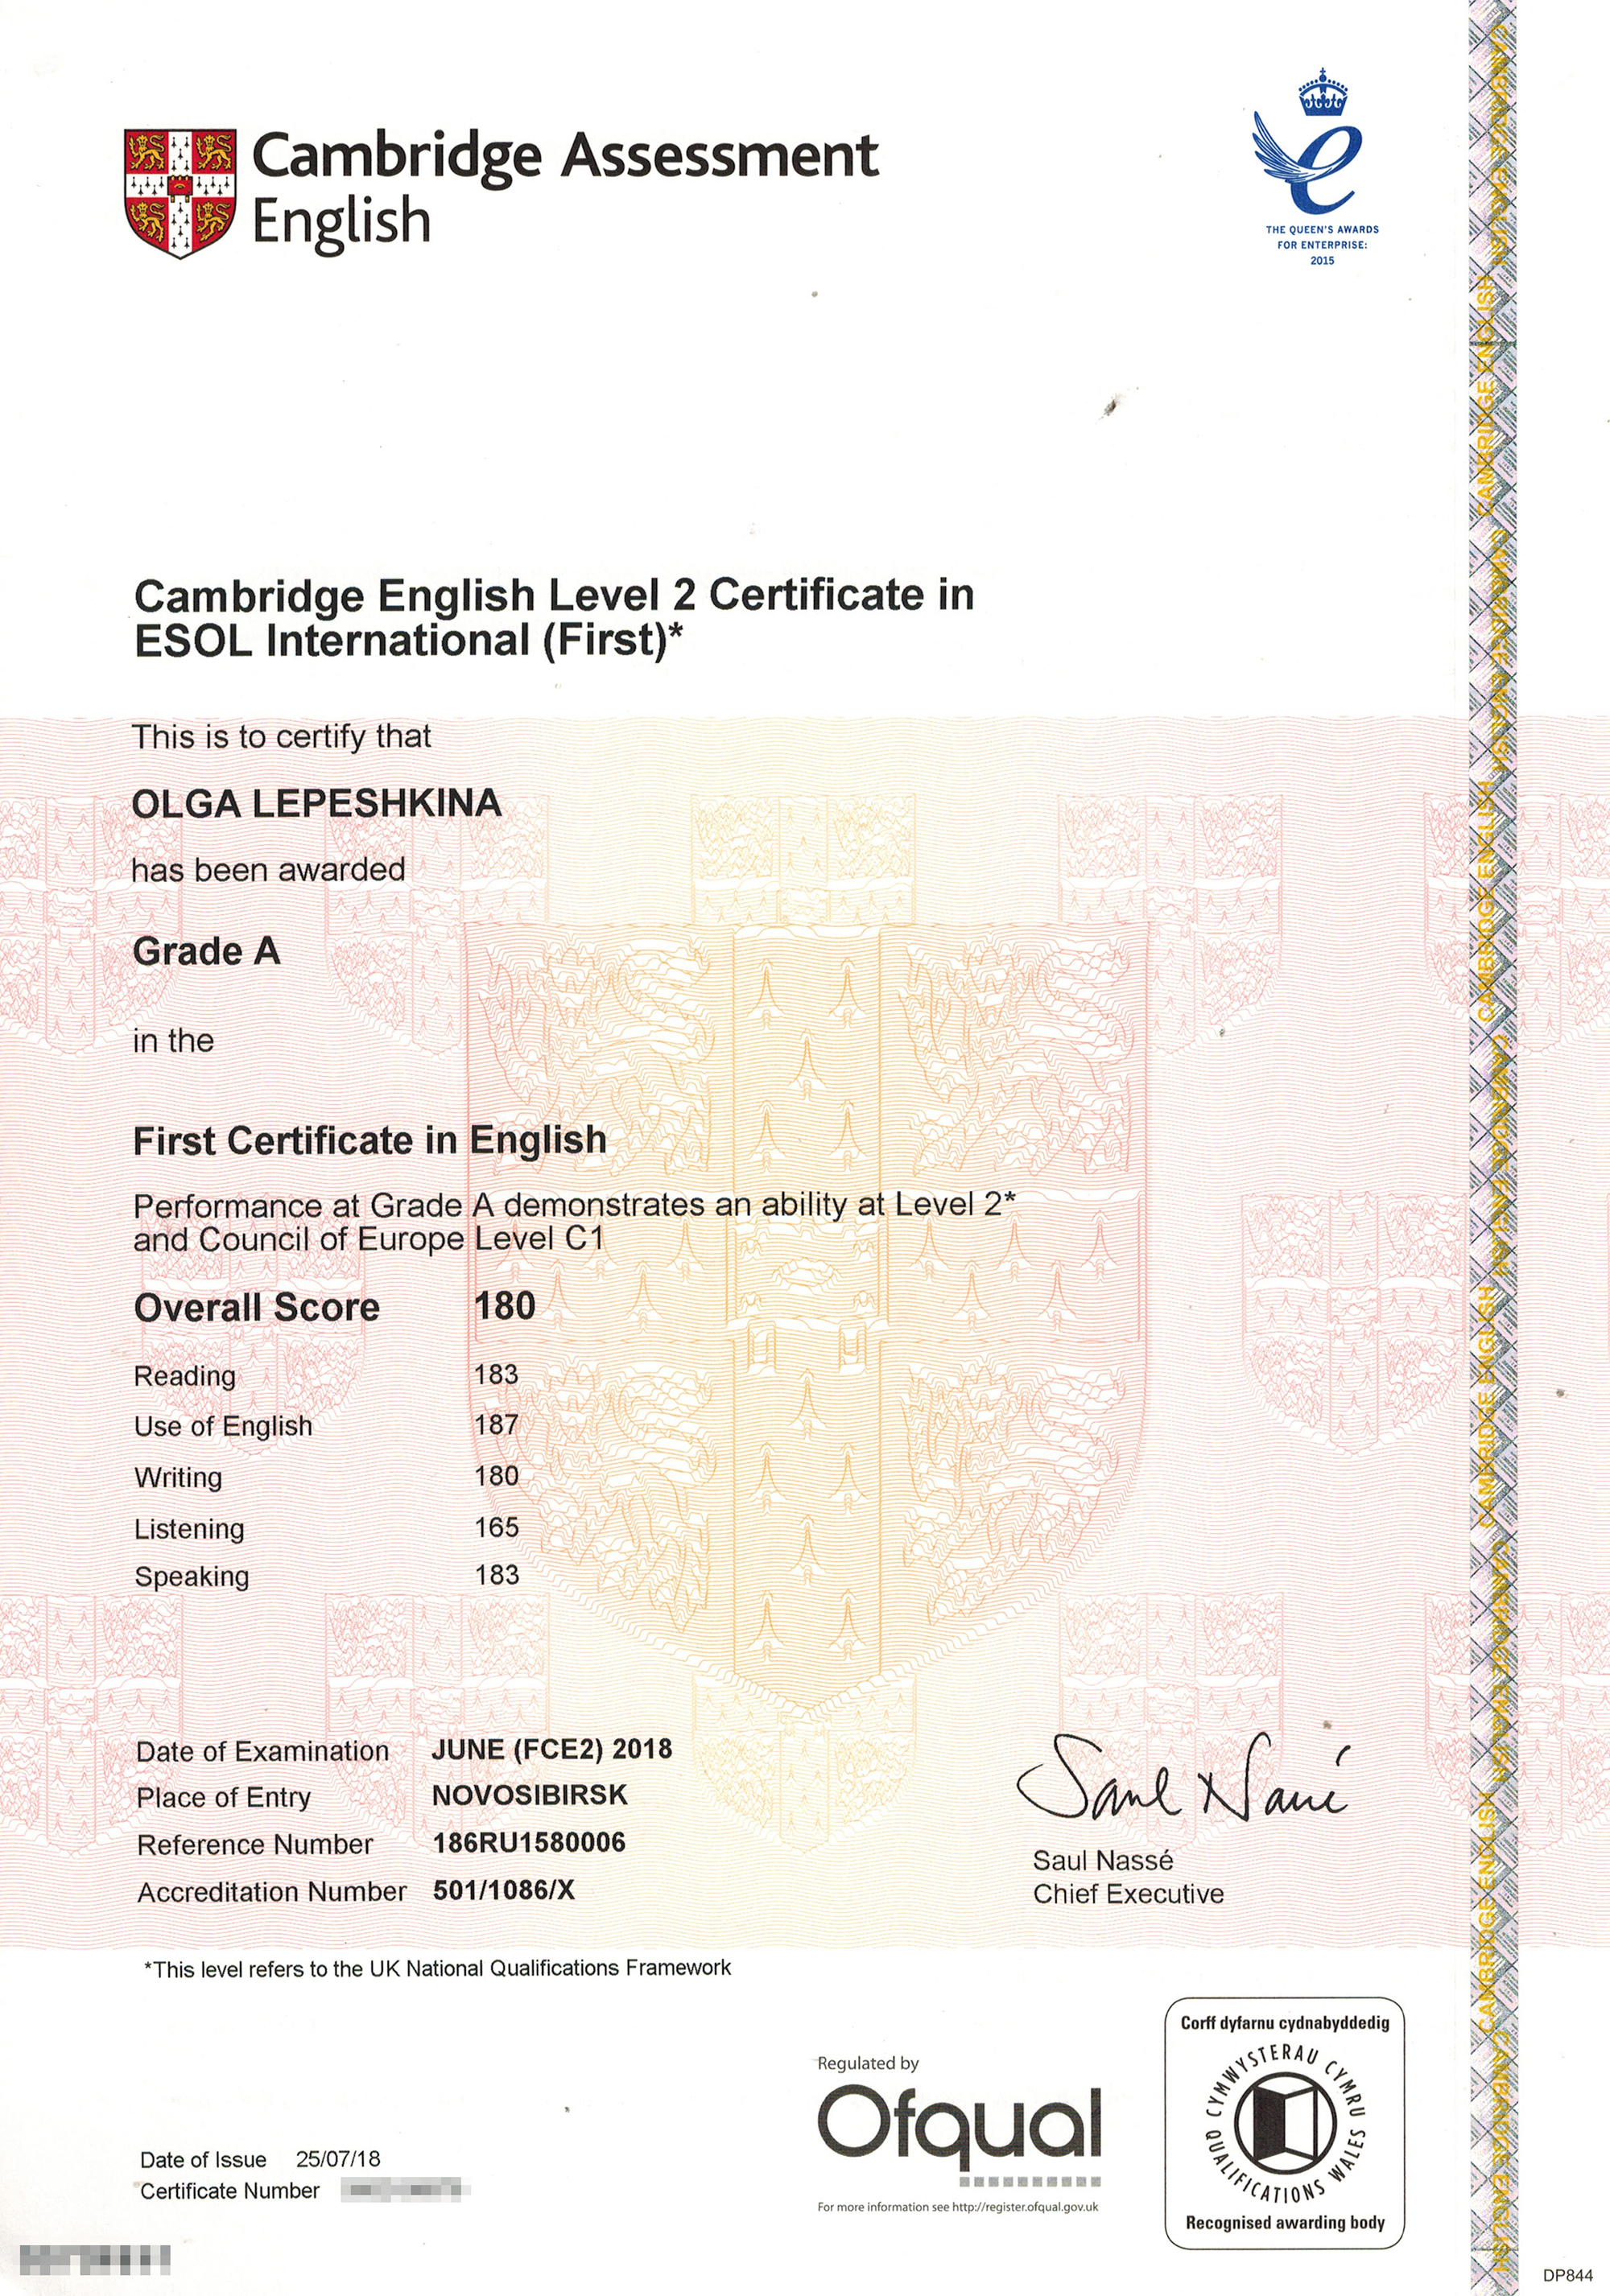 Мой кембриджский сертификат, который подтверждает уровень C1. В нем указываются баллы по всем частям экзамена, итоговый балл, грейд и соответствие уровню CEFR